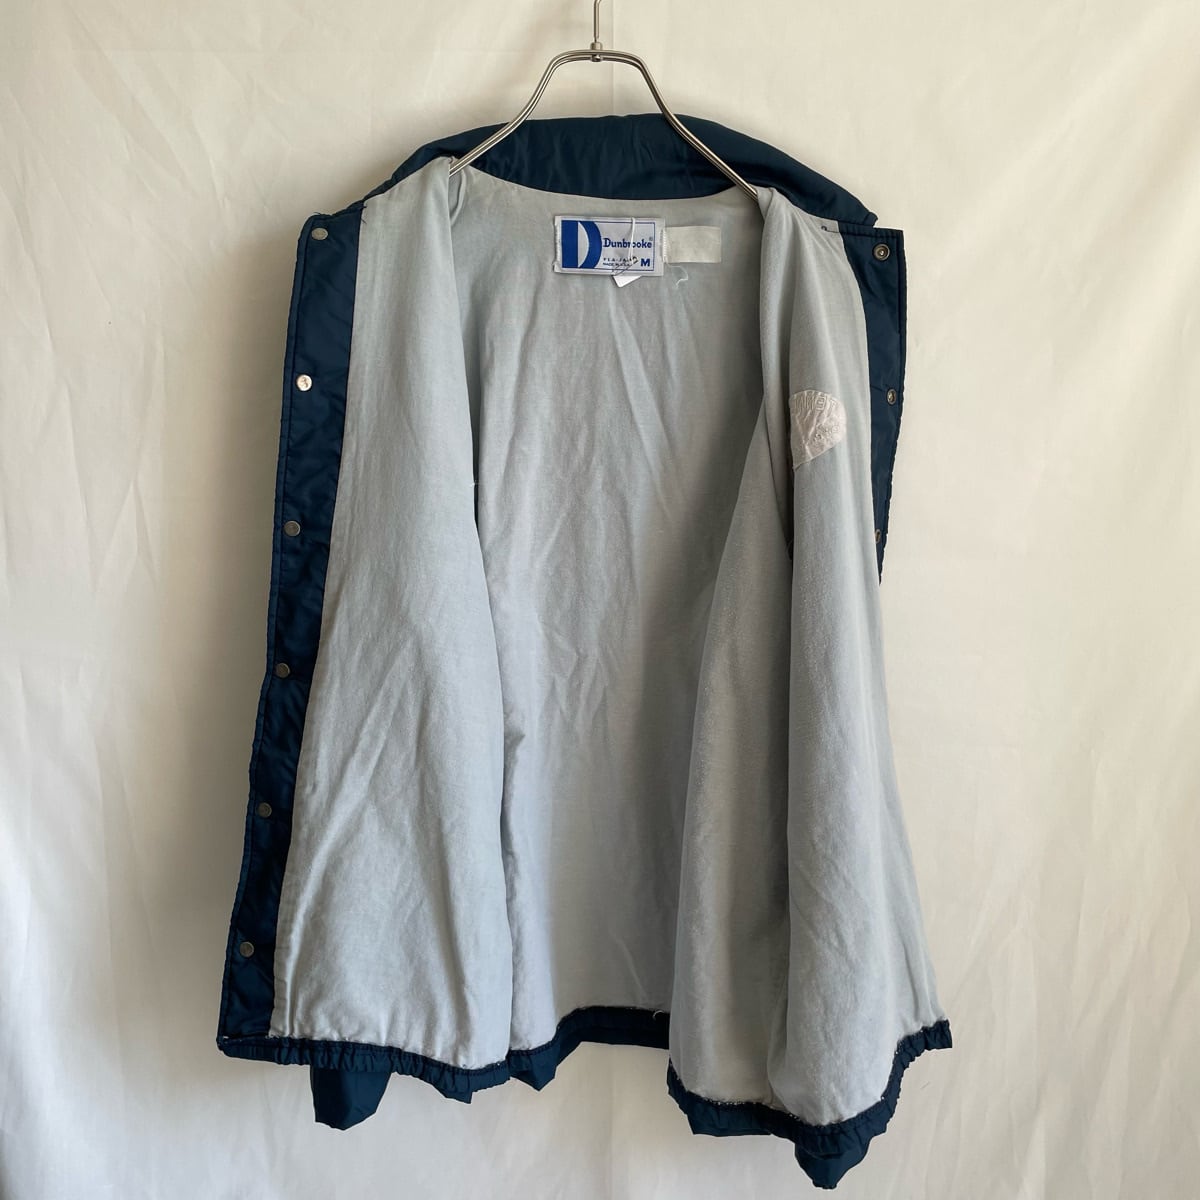 90s Dunbrooke PLA-JAC コーチジャケット 刺繍 ナイロン 古着 紺